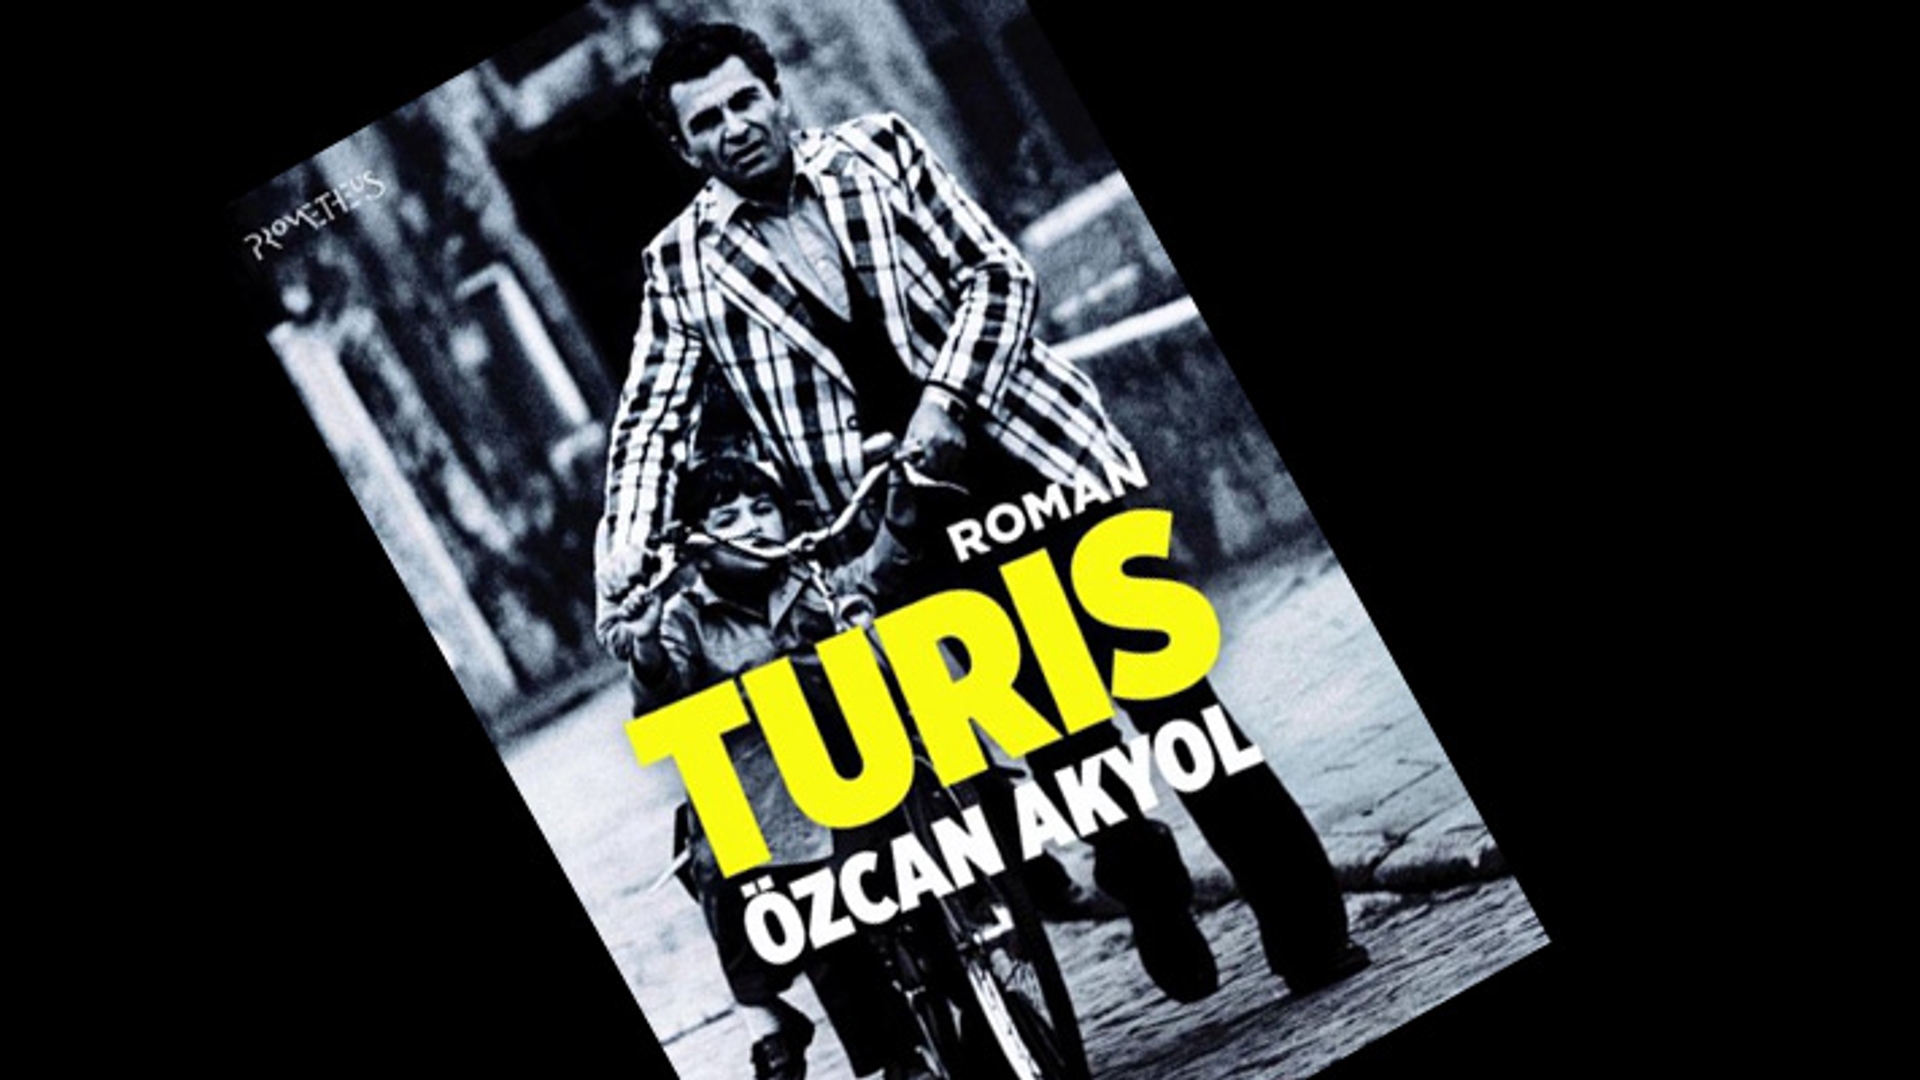 zcan Akyol - Turis